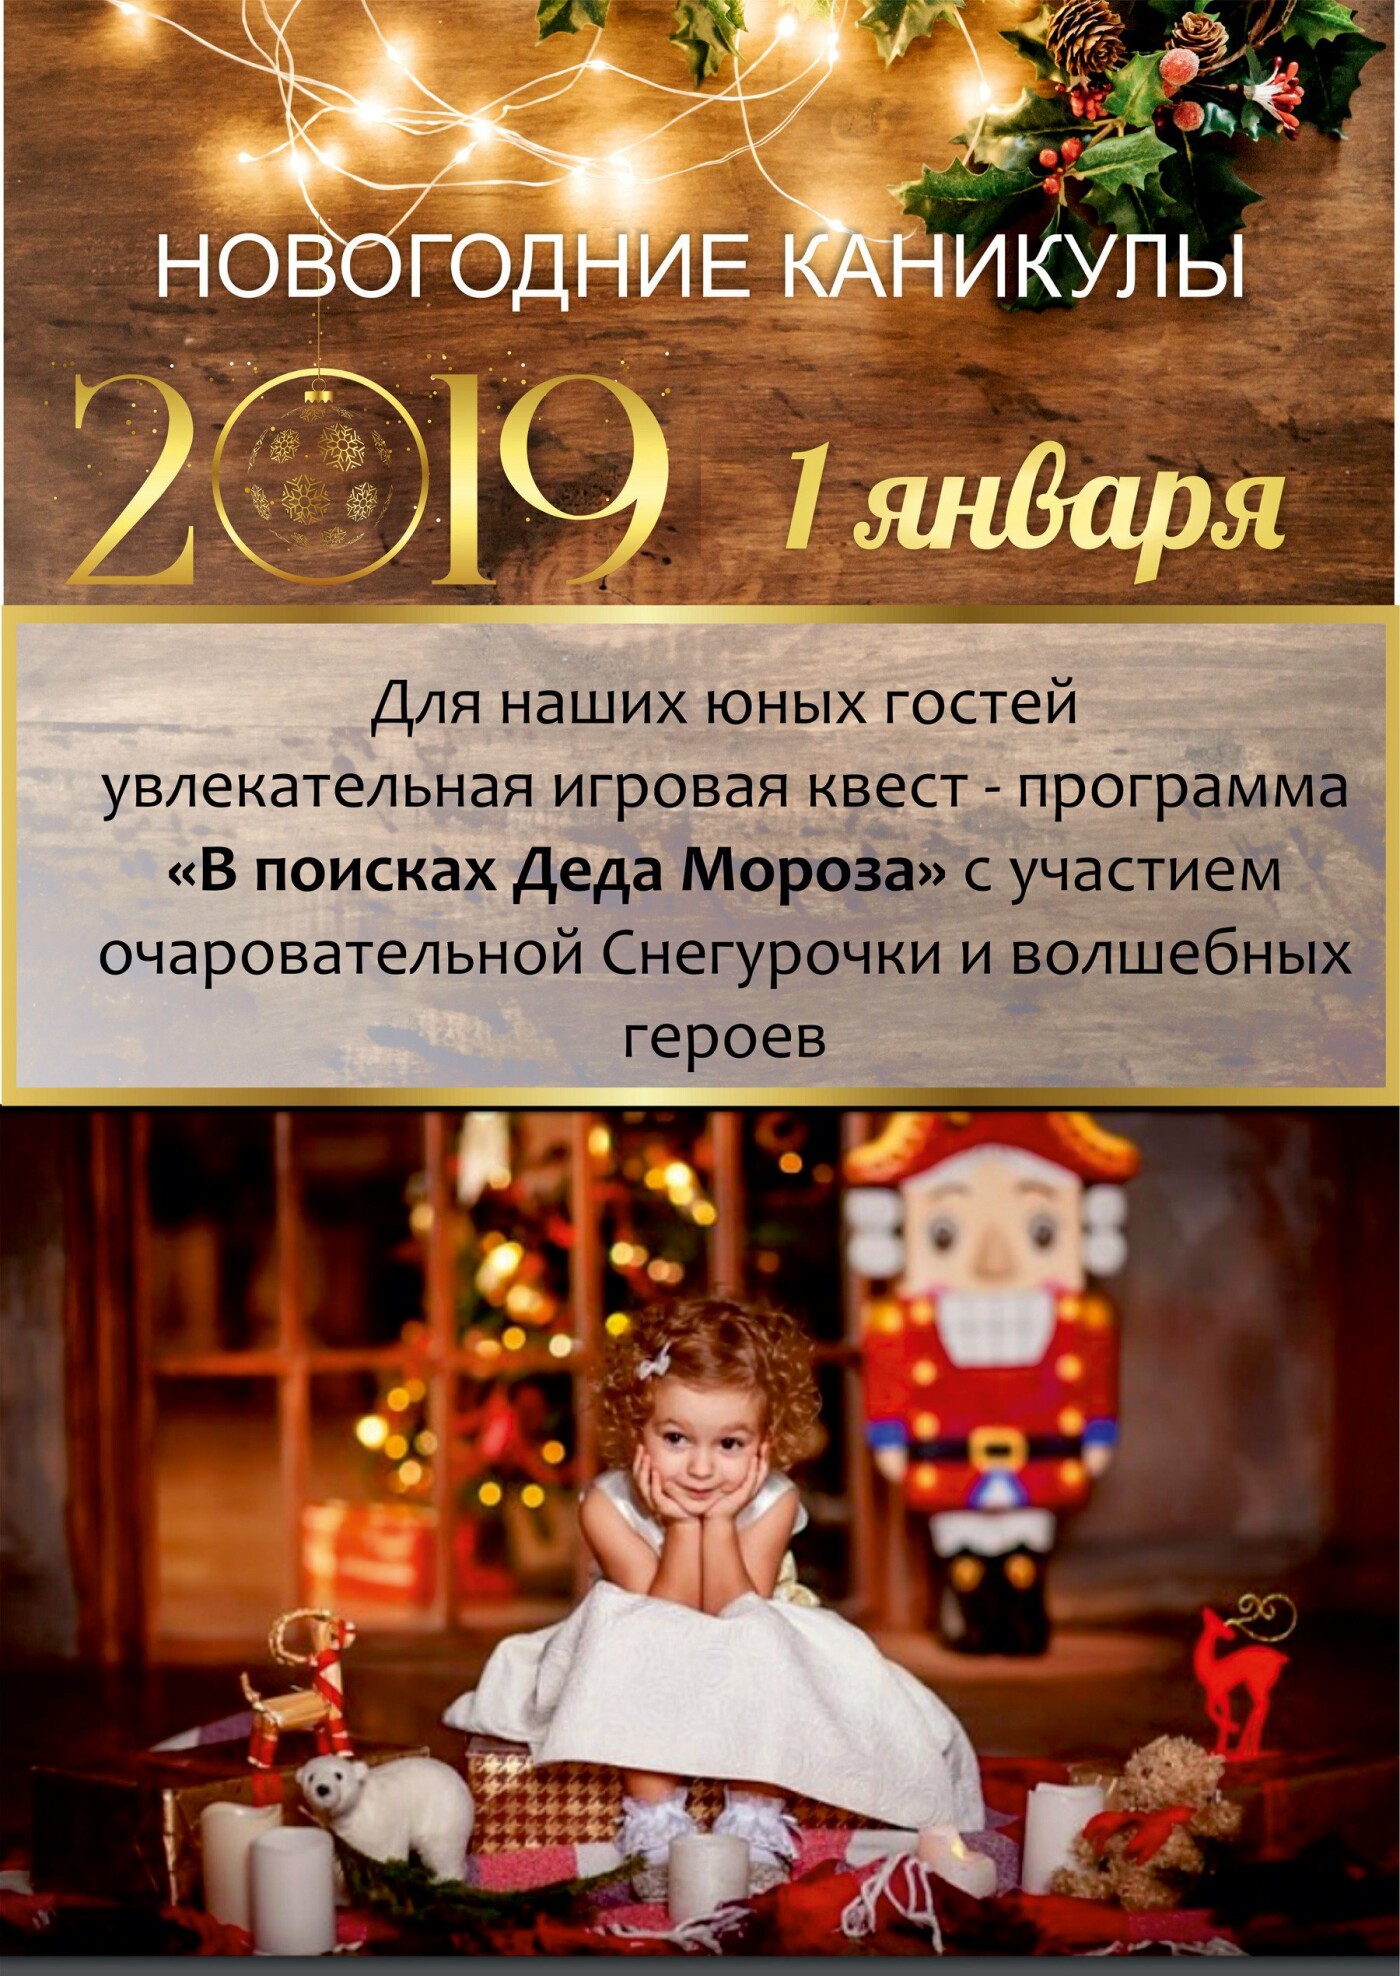 Встречайте Новый год-2019 всей семьей в санатории «Айвазовское»!, фото-2